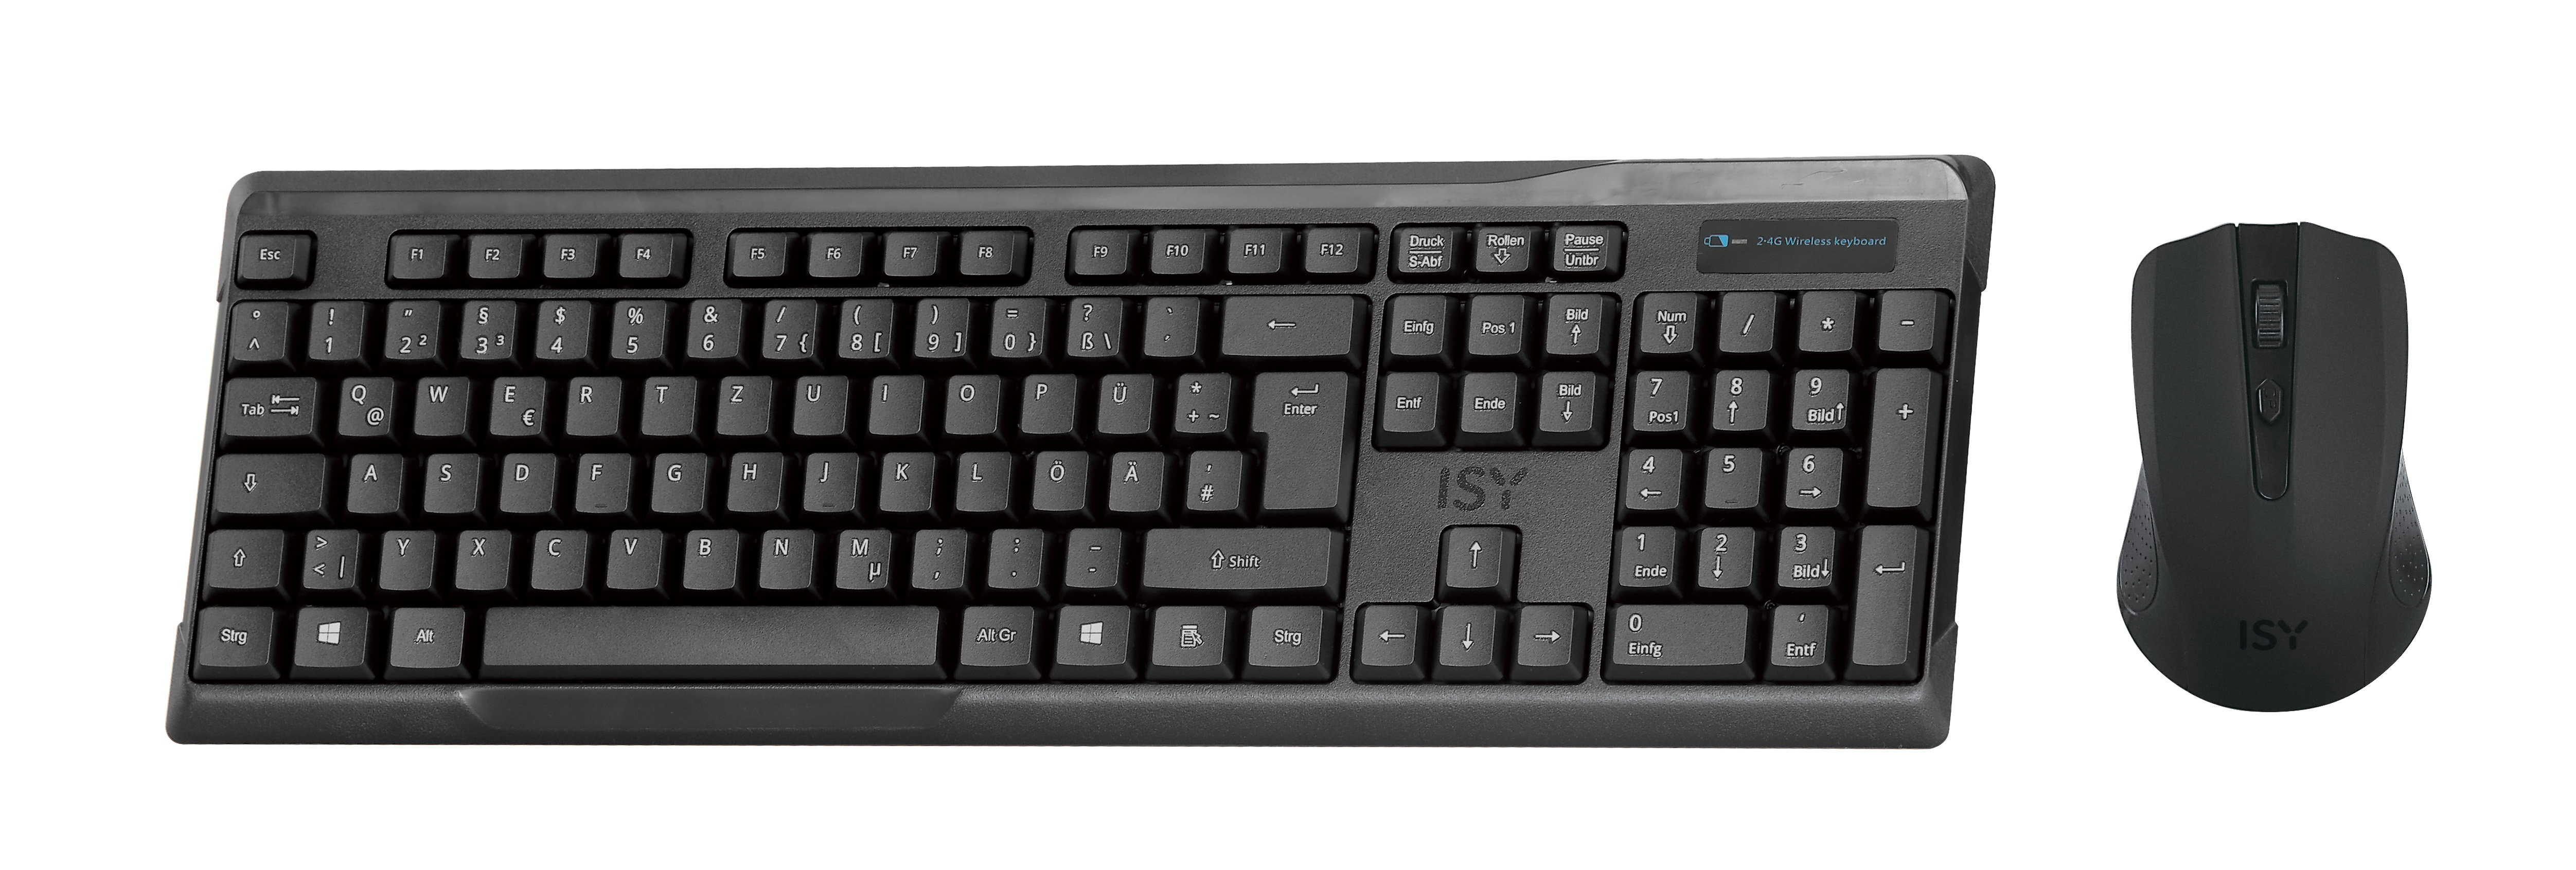 ISY IDE-2500, Tastatur & kabellos, Maus Schwarz Set